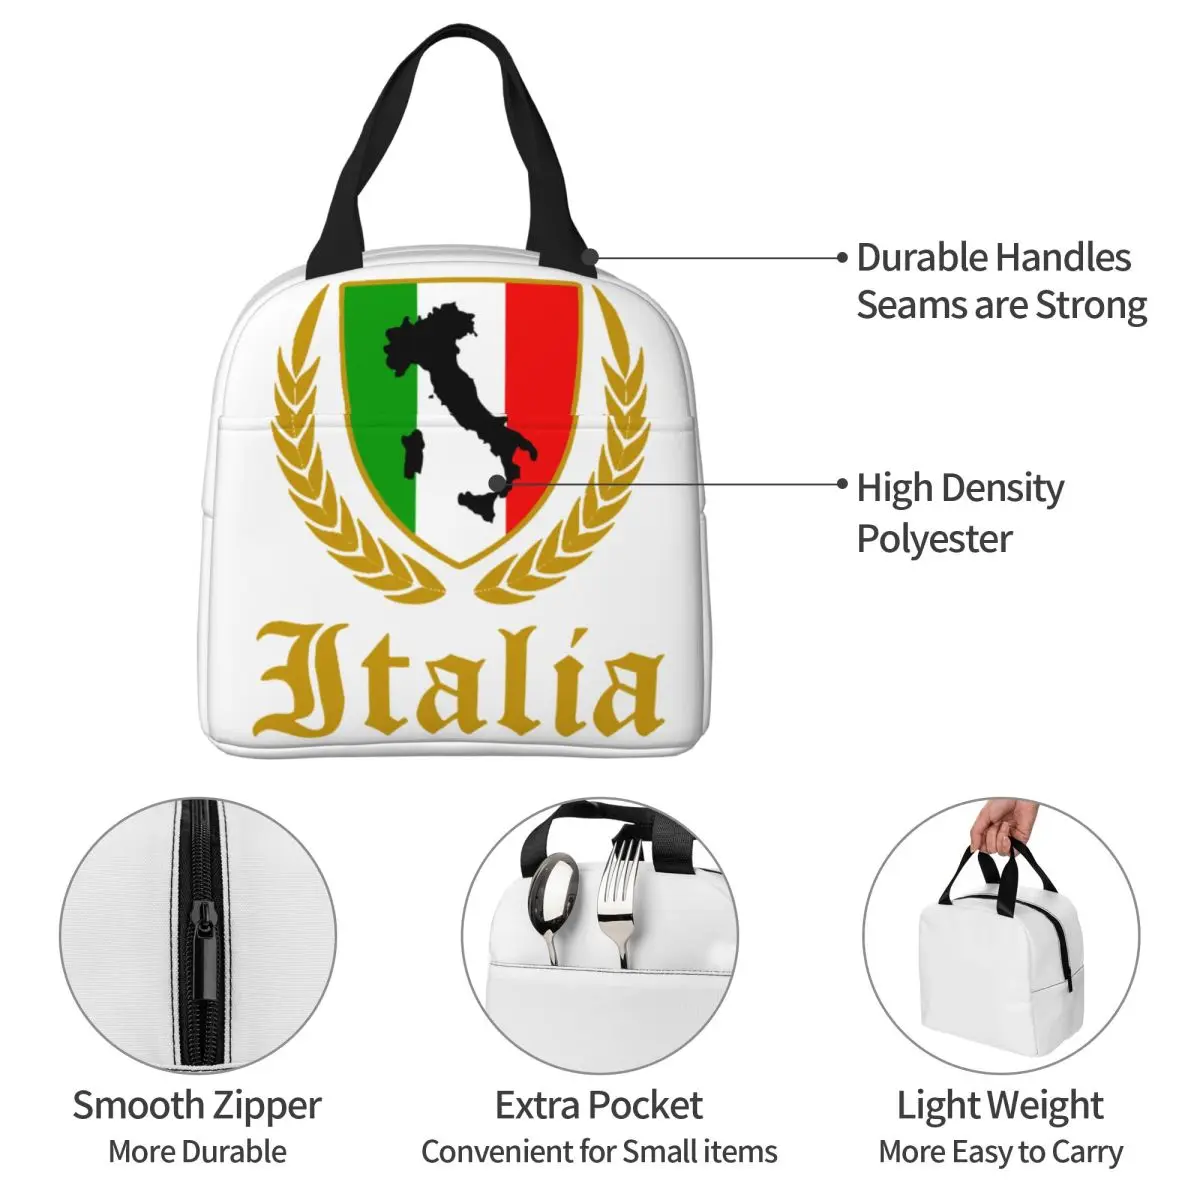 Italia Itália Bandeira Italiana Isolados De Sacos De Almoço Saco Reutilizável Mapa De Alta Capacidade Tote Almoço Caixa De Armazenamento De Alimentos, Sacos De Viagem